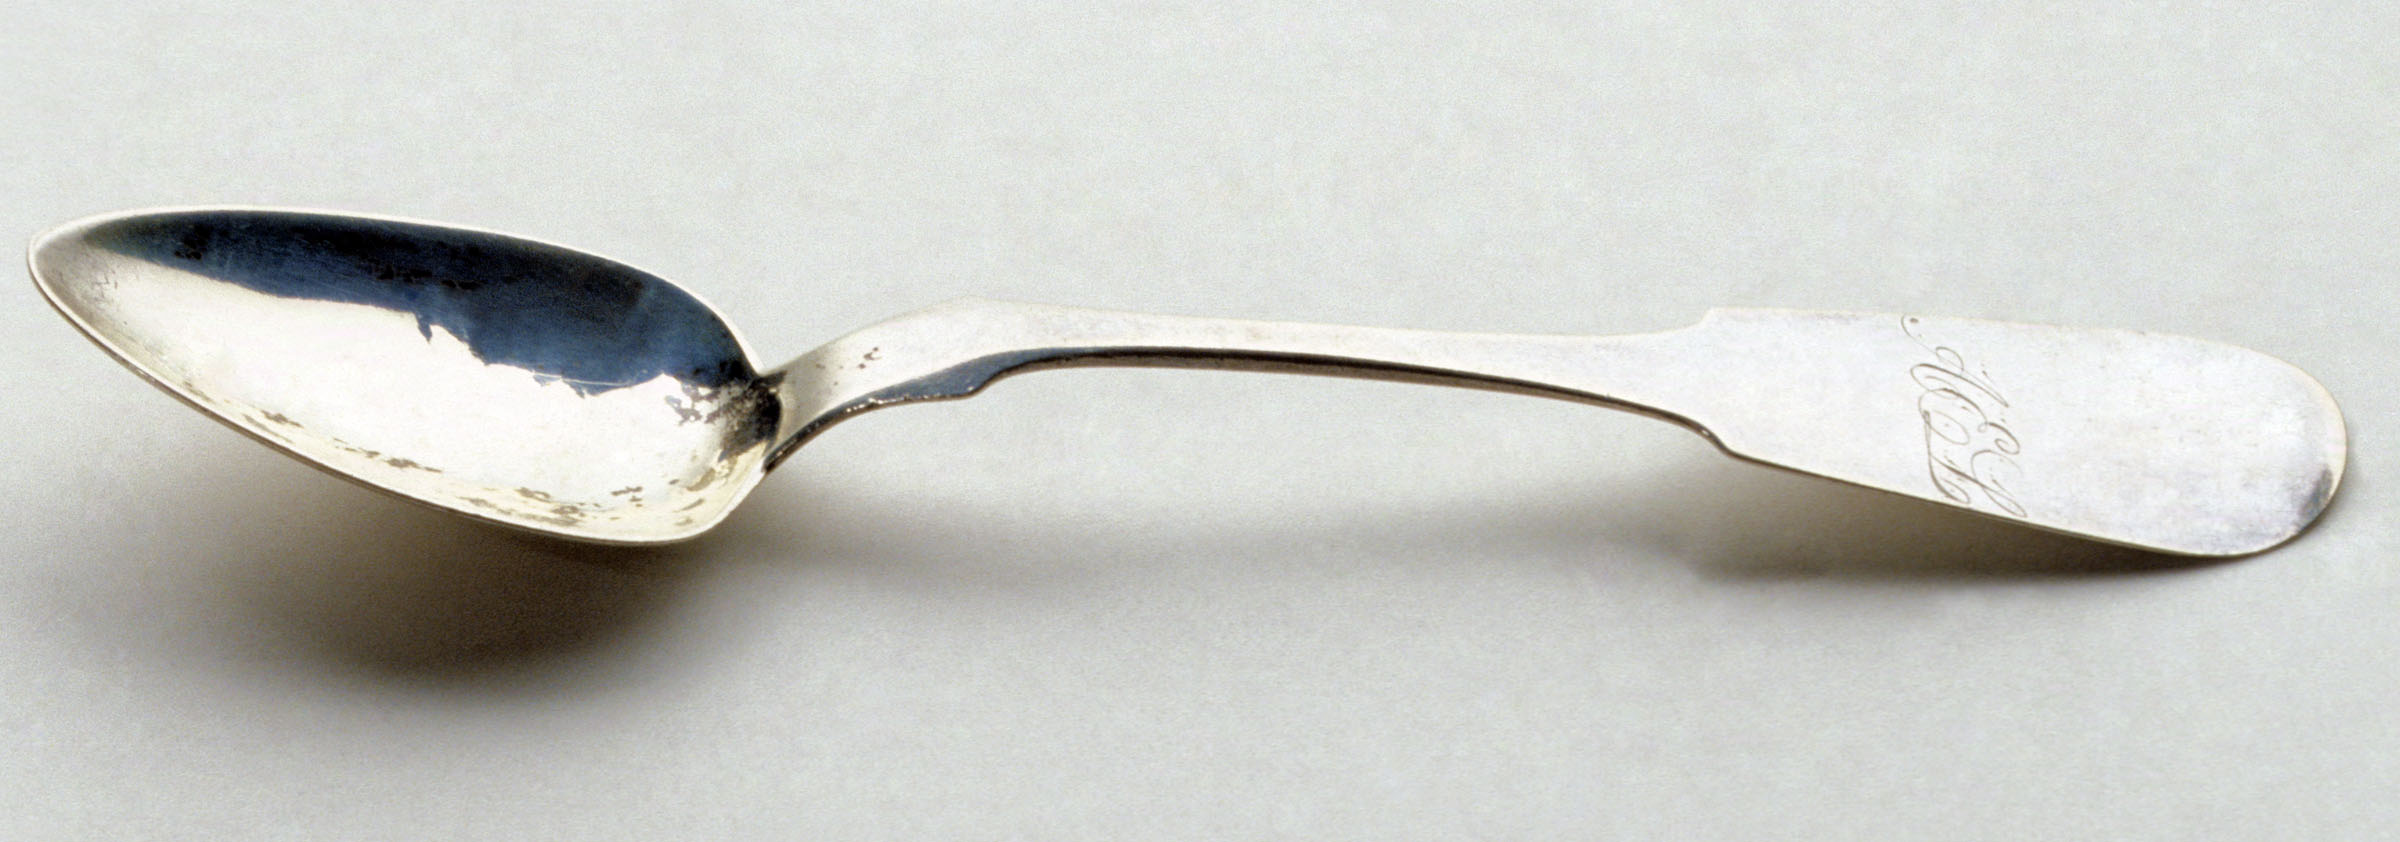 1961.0429.001 Spoon, Teaspoon